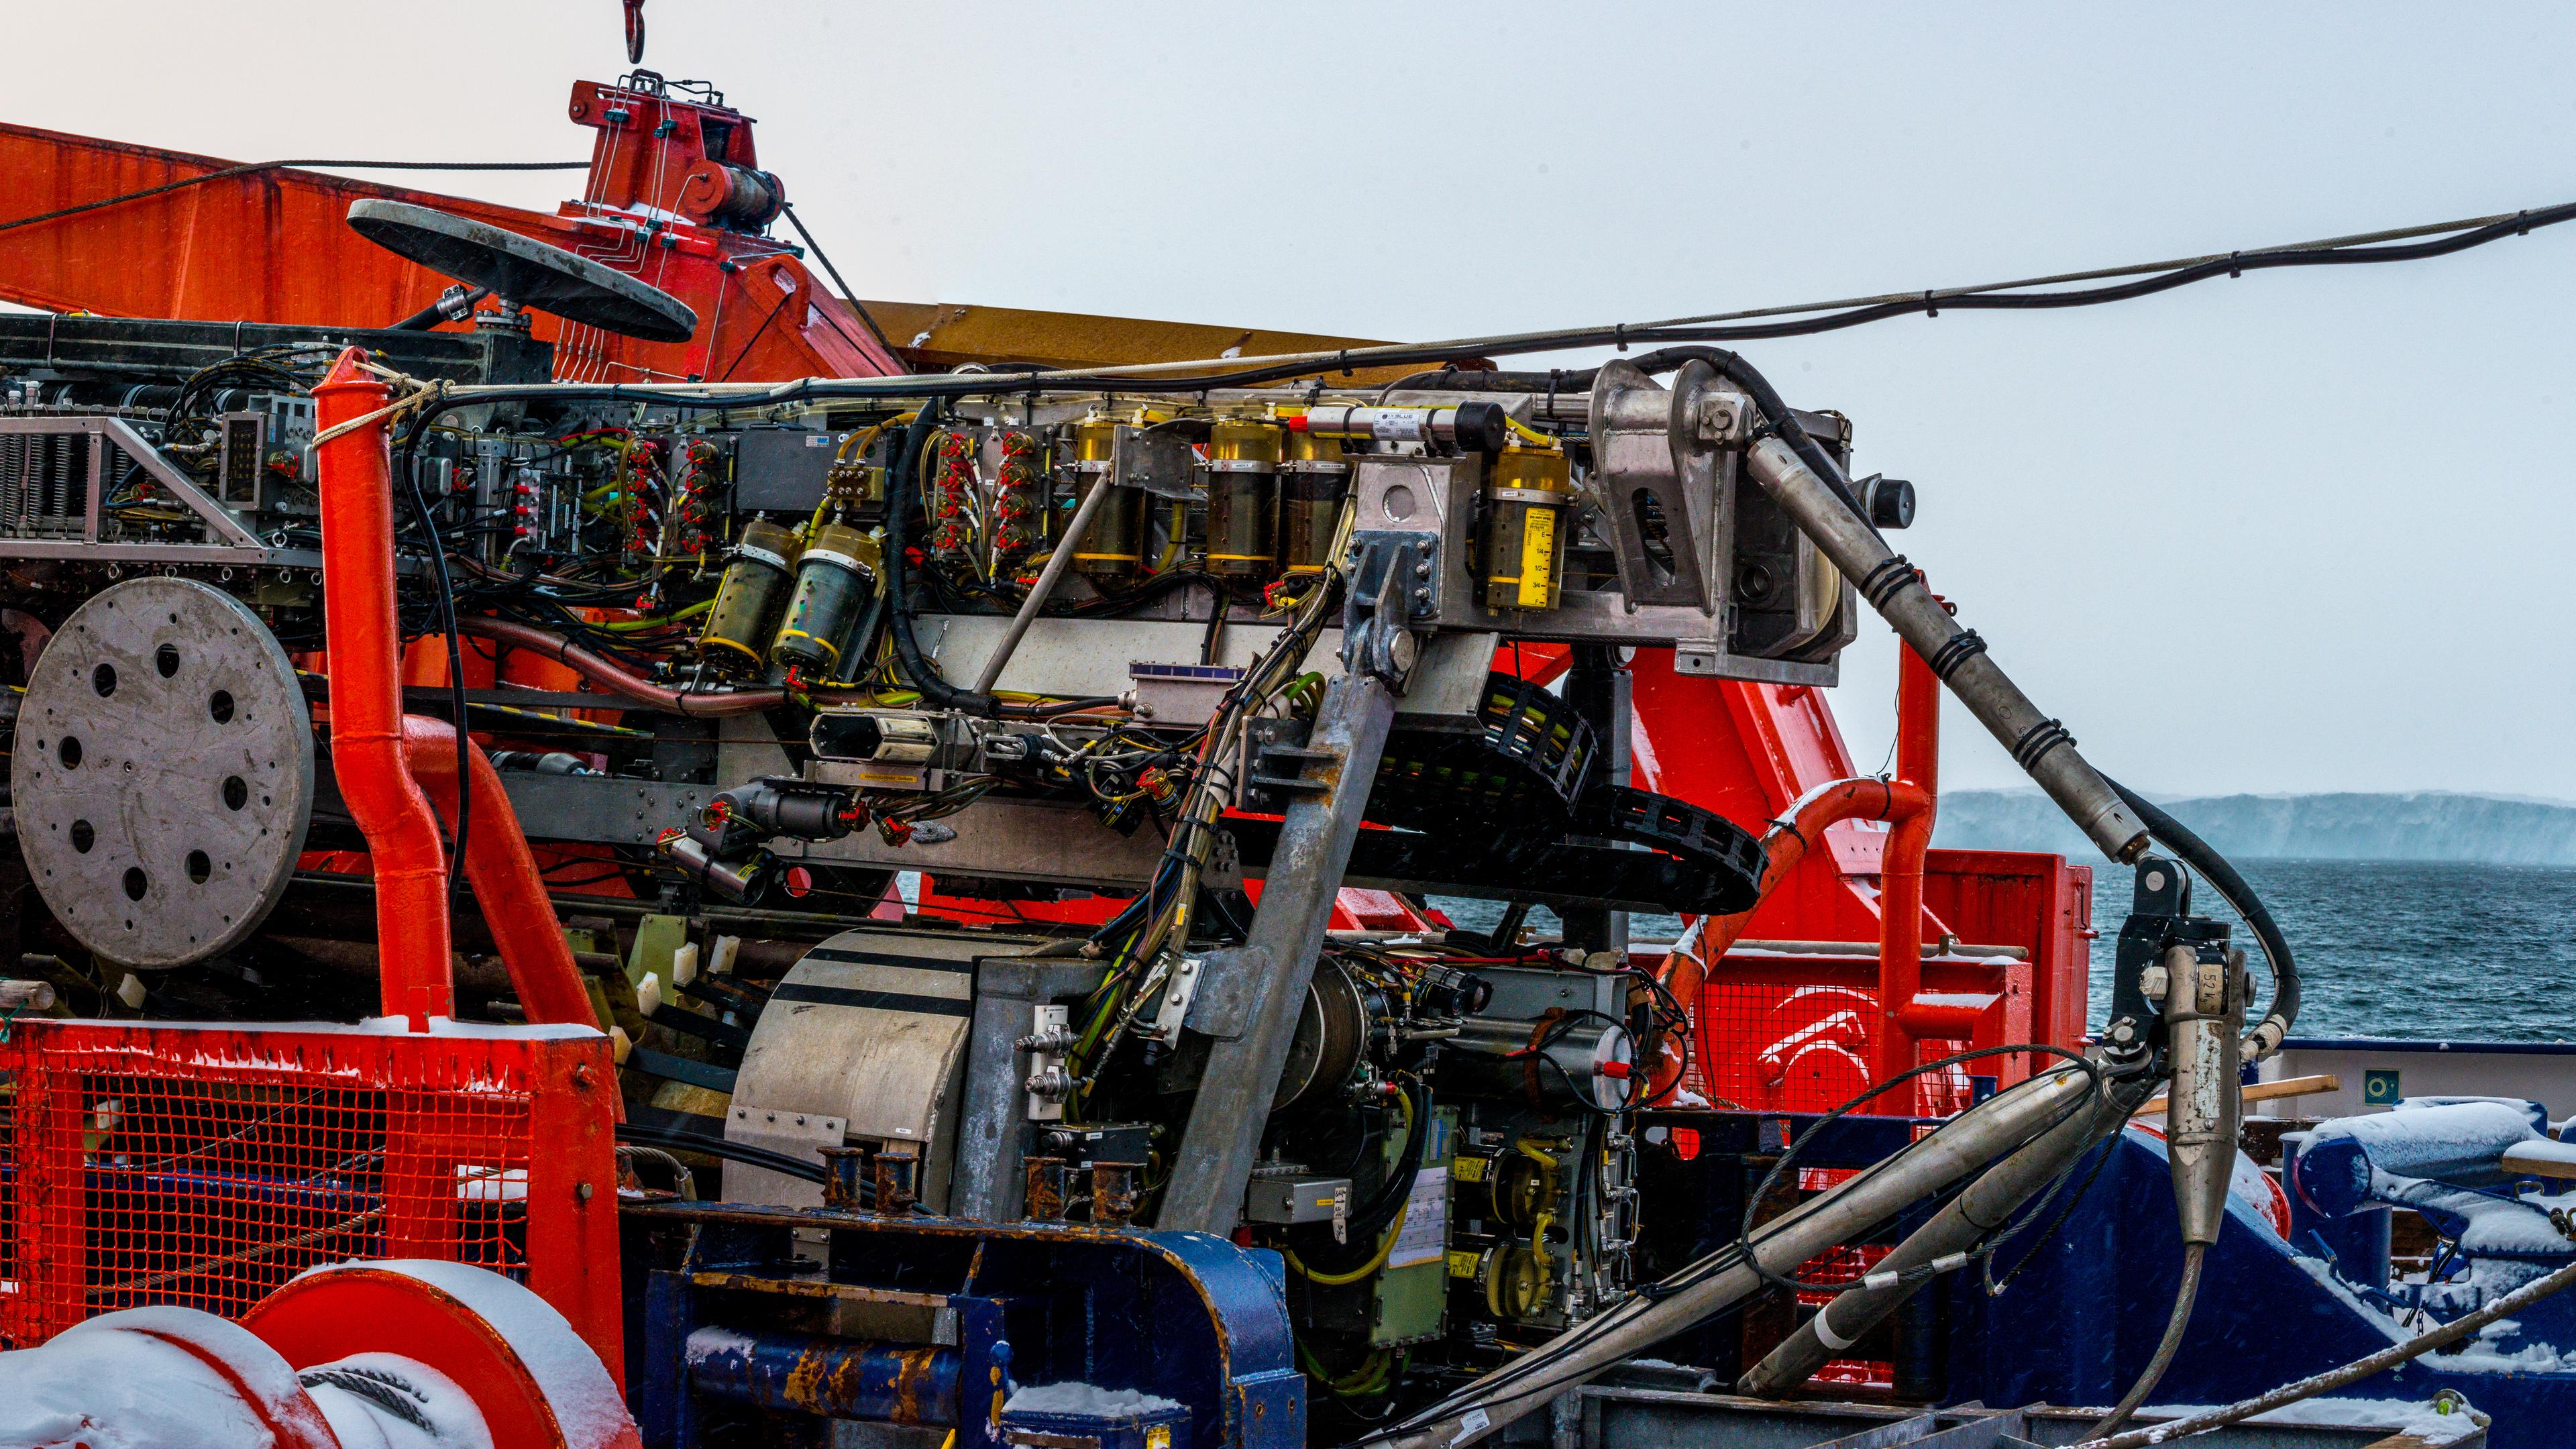 Eine meterbreite Apparatur, ein spezieller Sediment-Bohrer, liegt an Deck des Forschungsschiffes Polarstern.